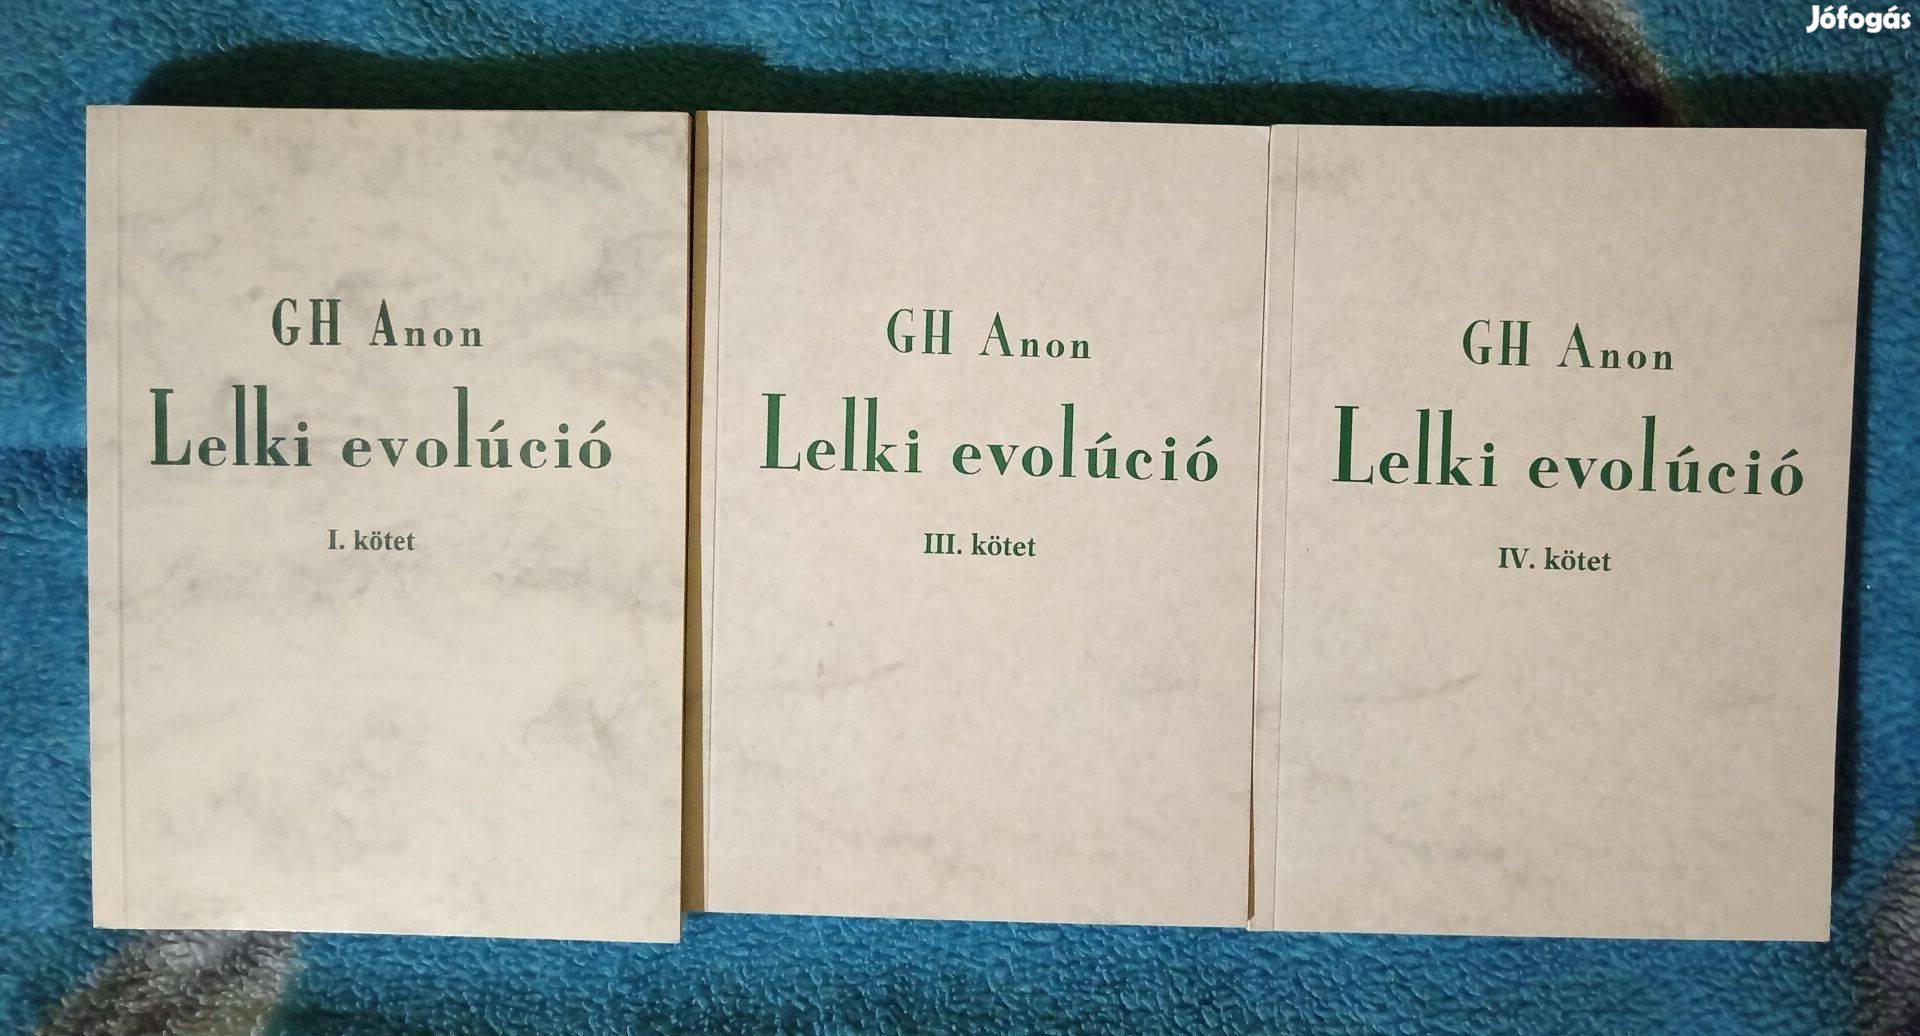 GH Anon Lelki Evolúció kötetek I, III, IV. kötet Foxposttal